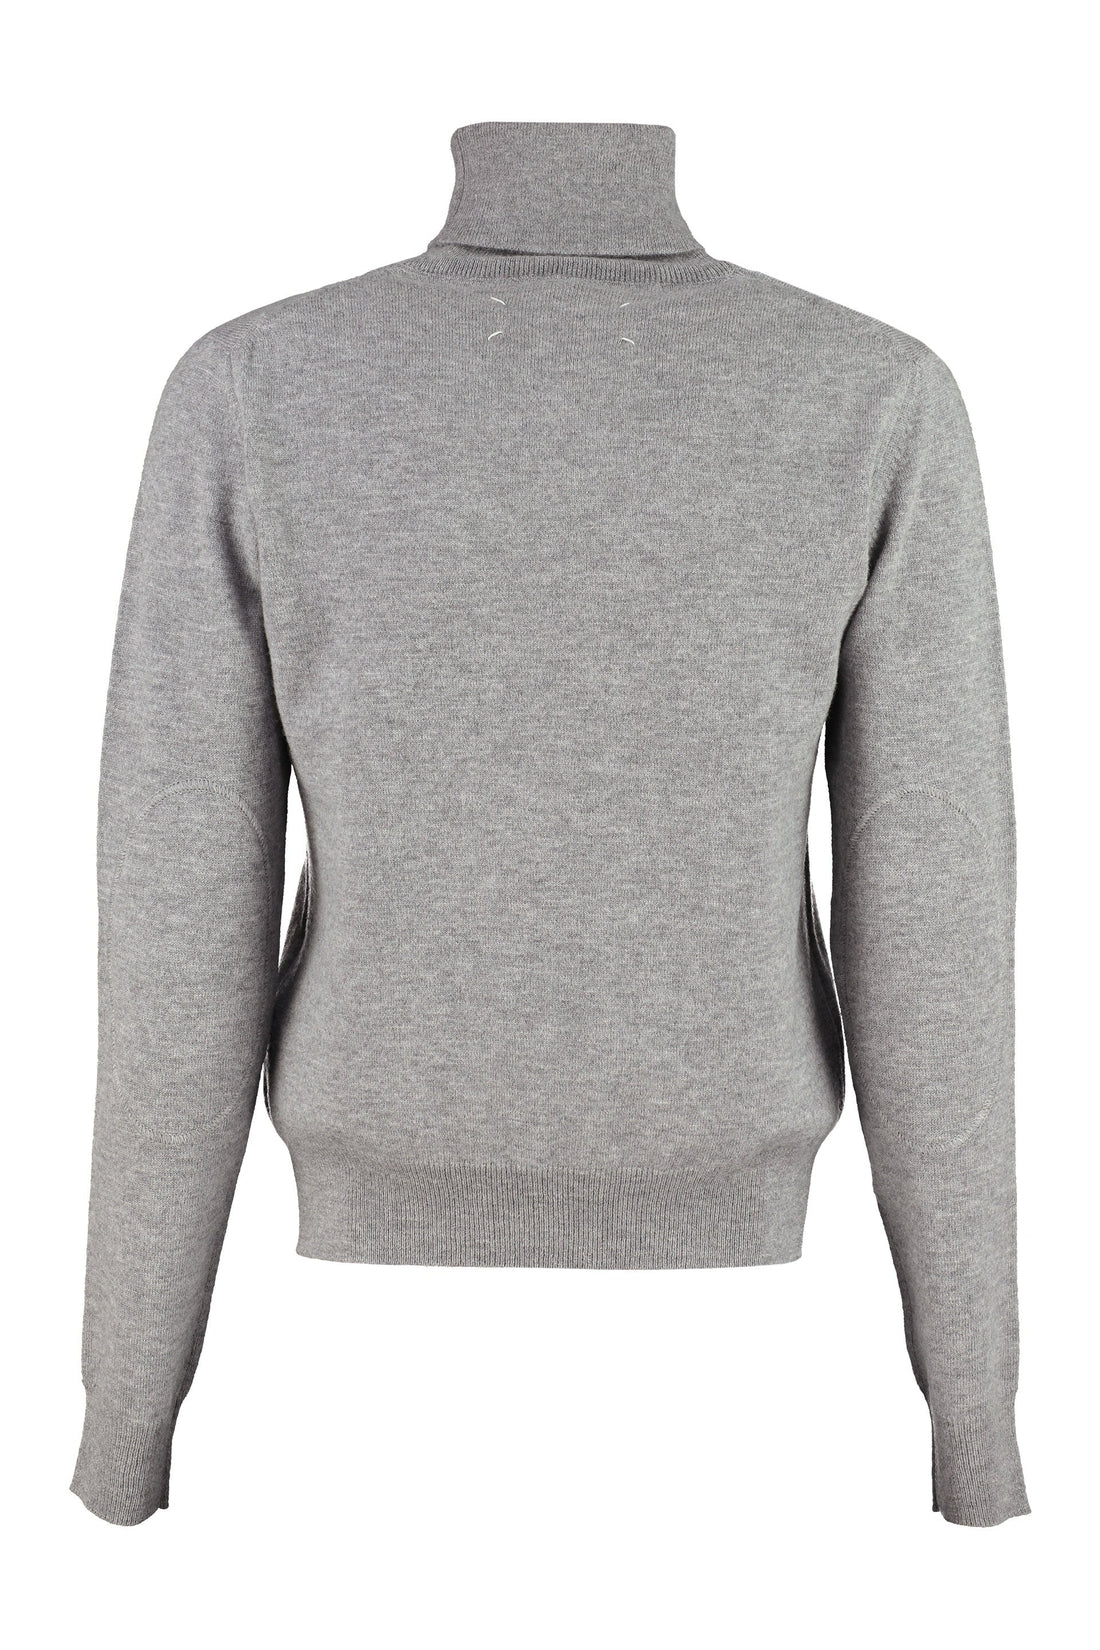 Maison Margiela-OUTLET-SALE-Wool turtleneck sweater-ARCHIVIST